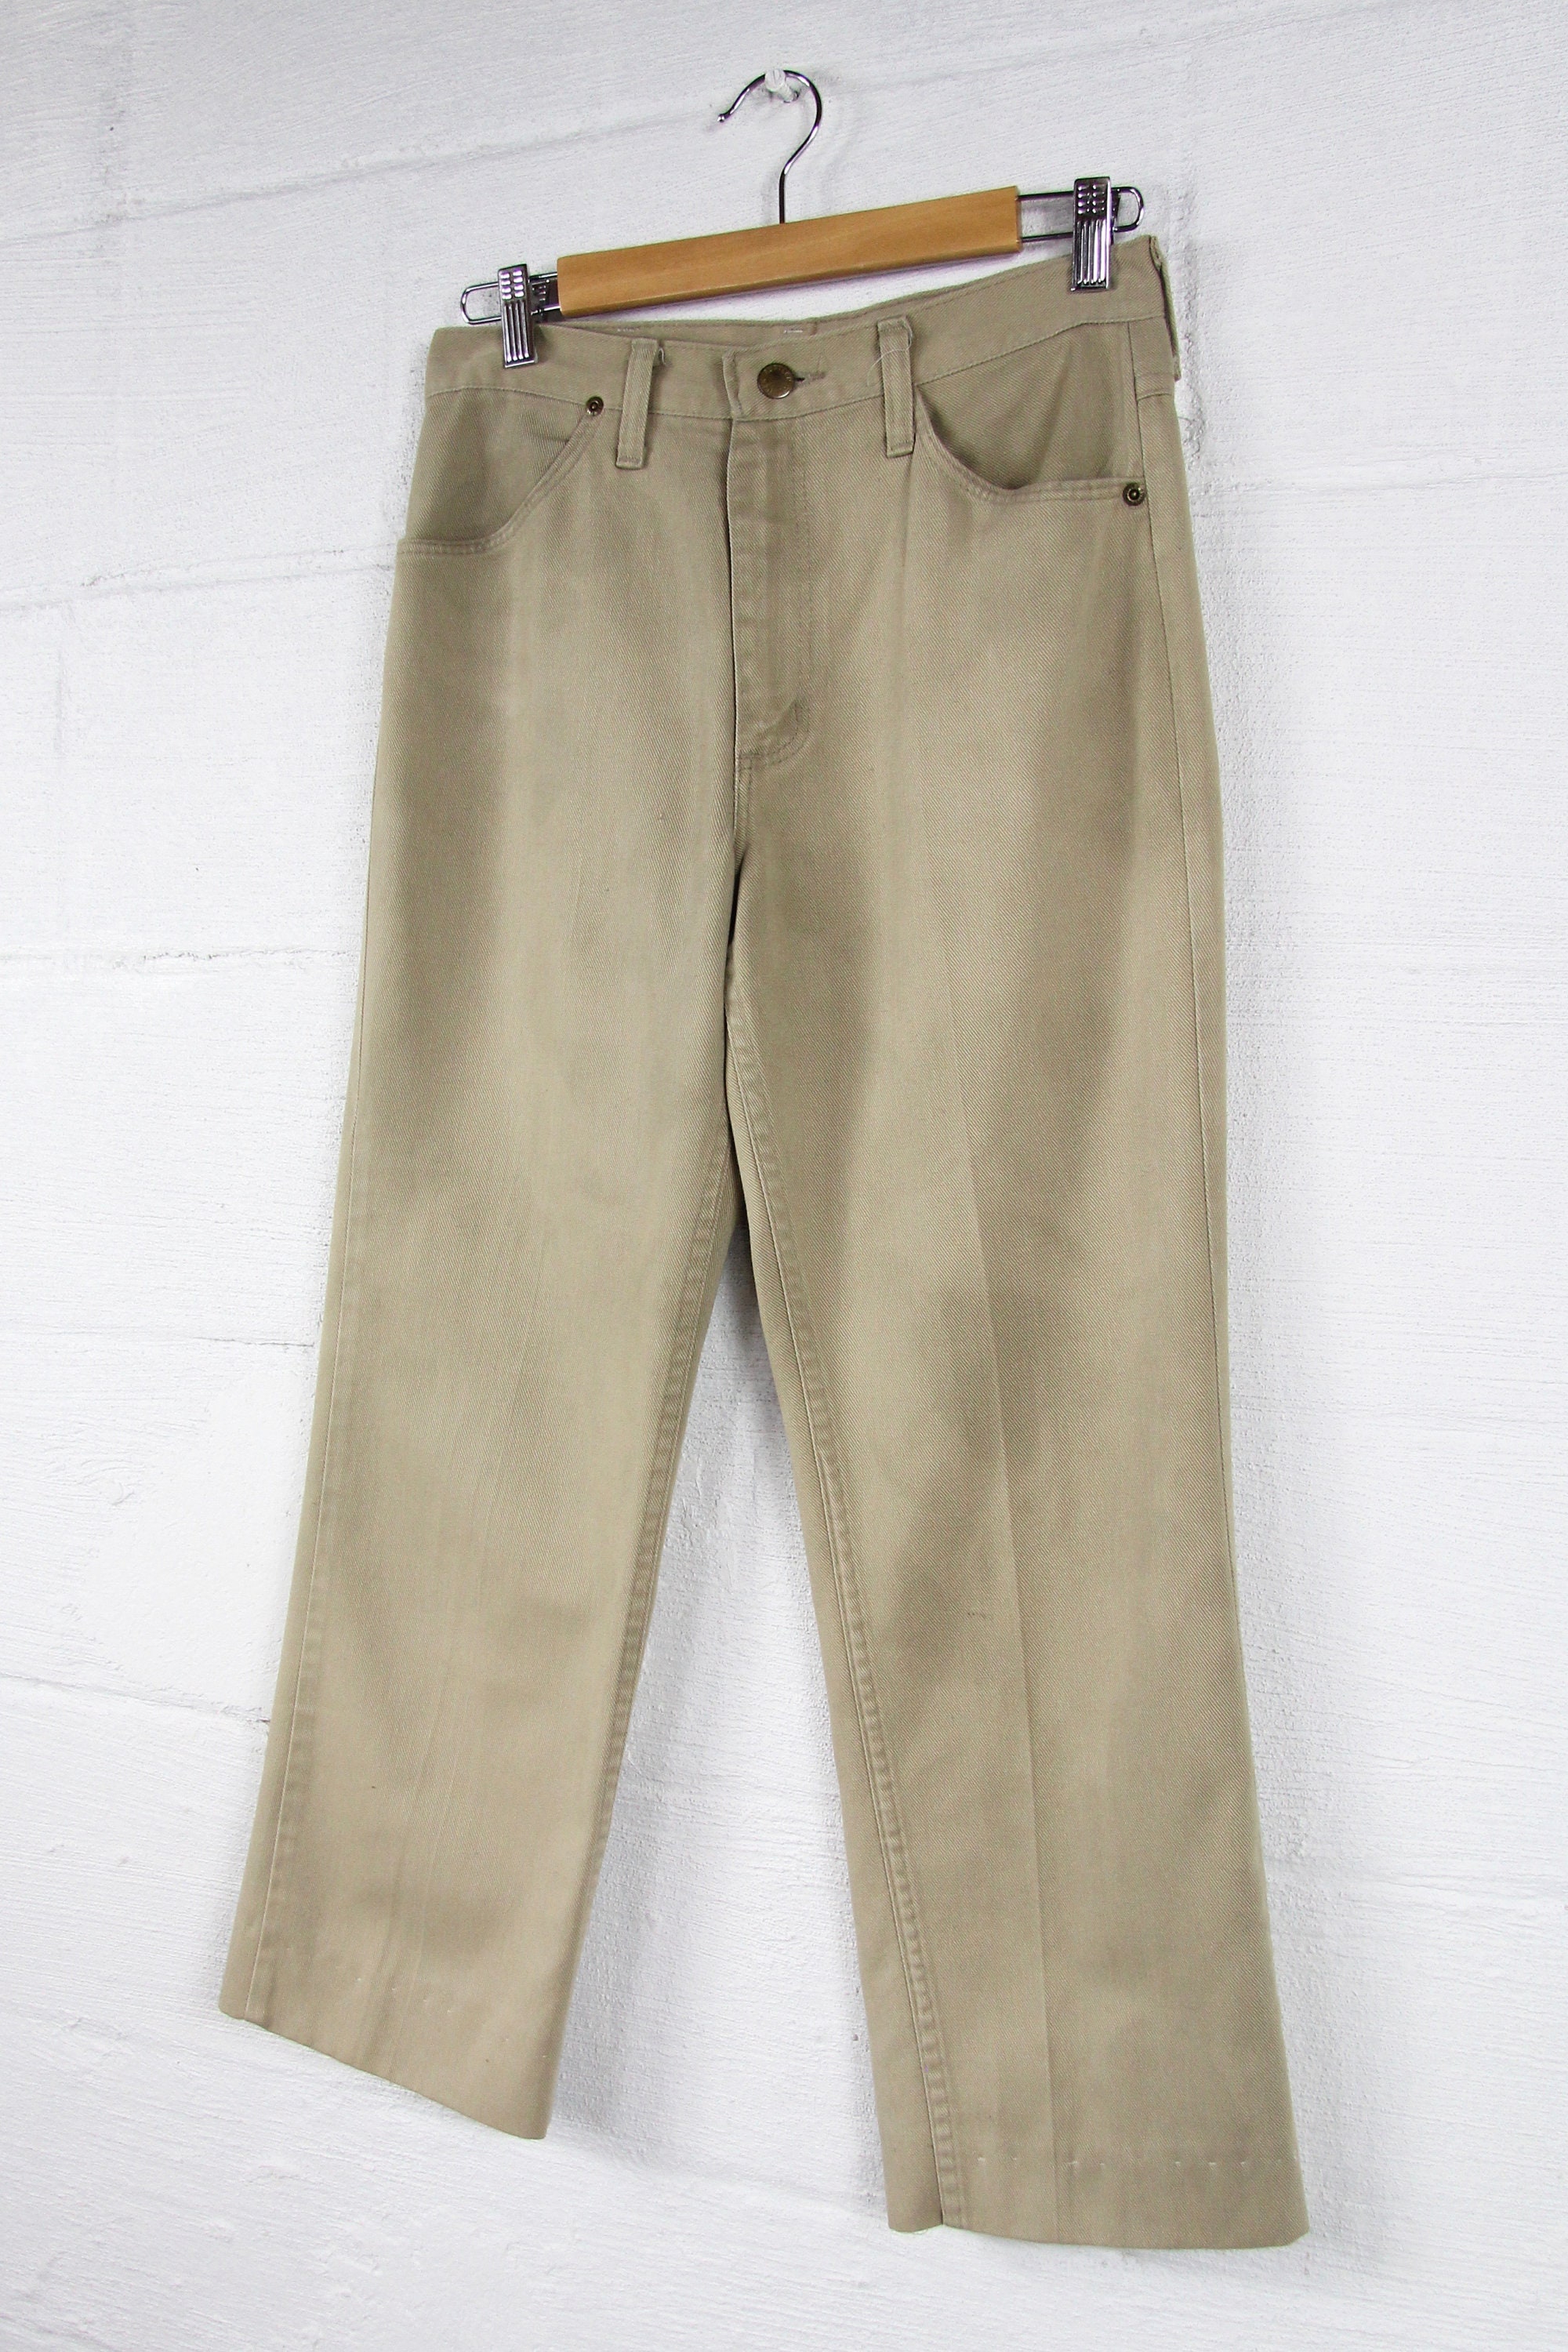 Men's Khaki Pants Rustler Vintage Work Slacks High Water Trouser Jeans ...